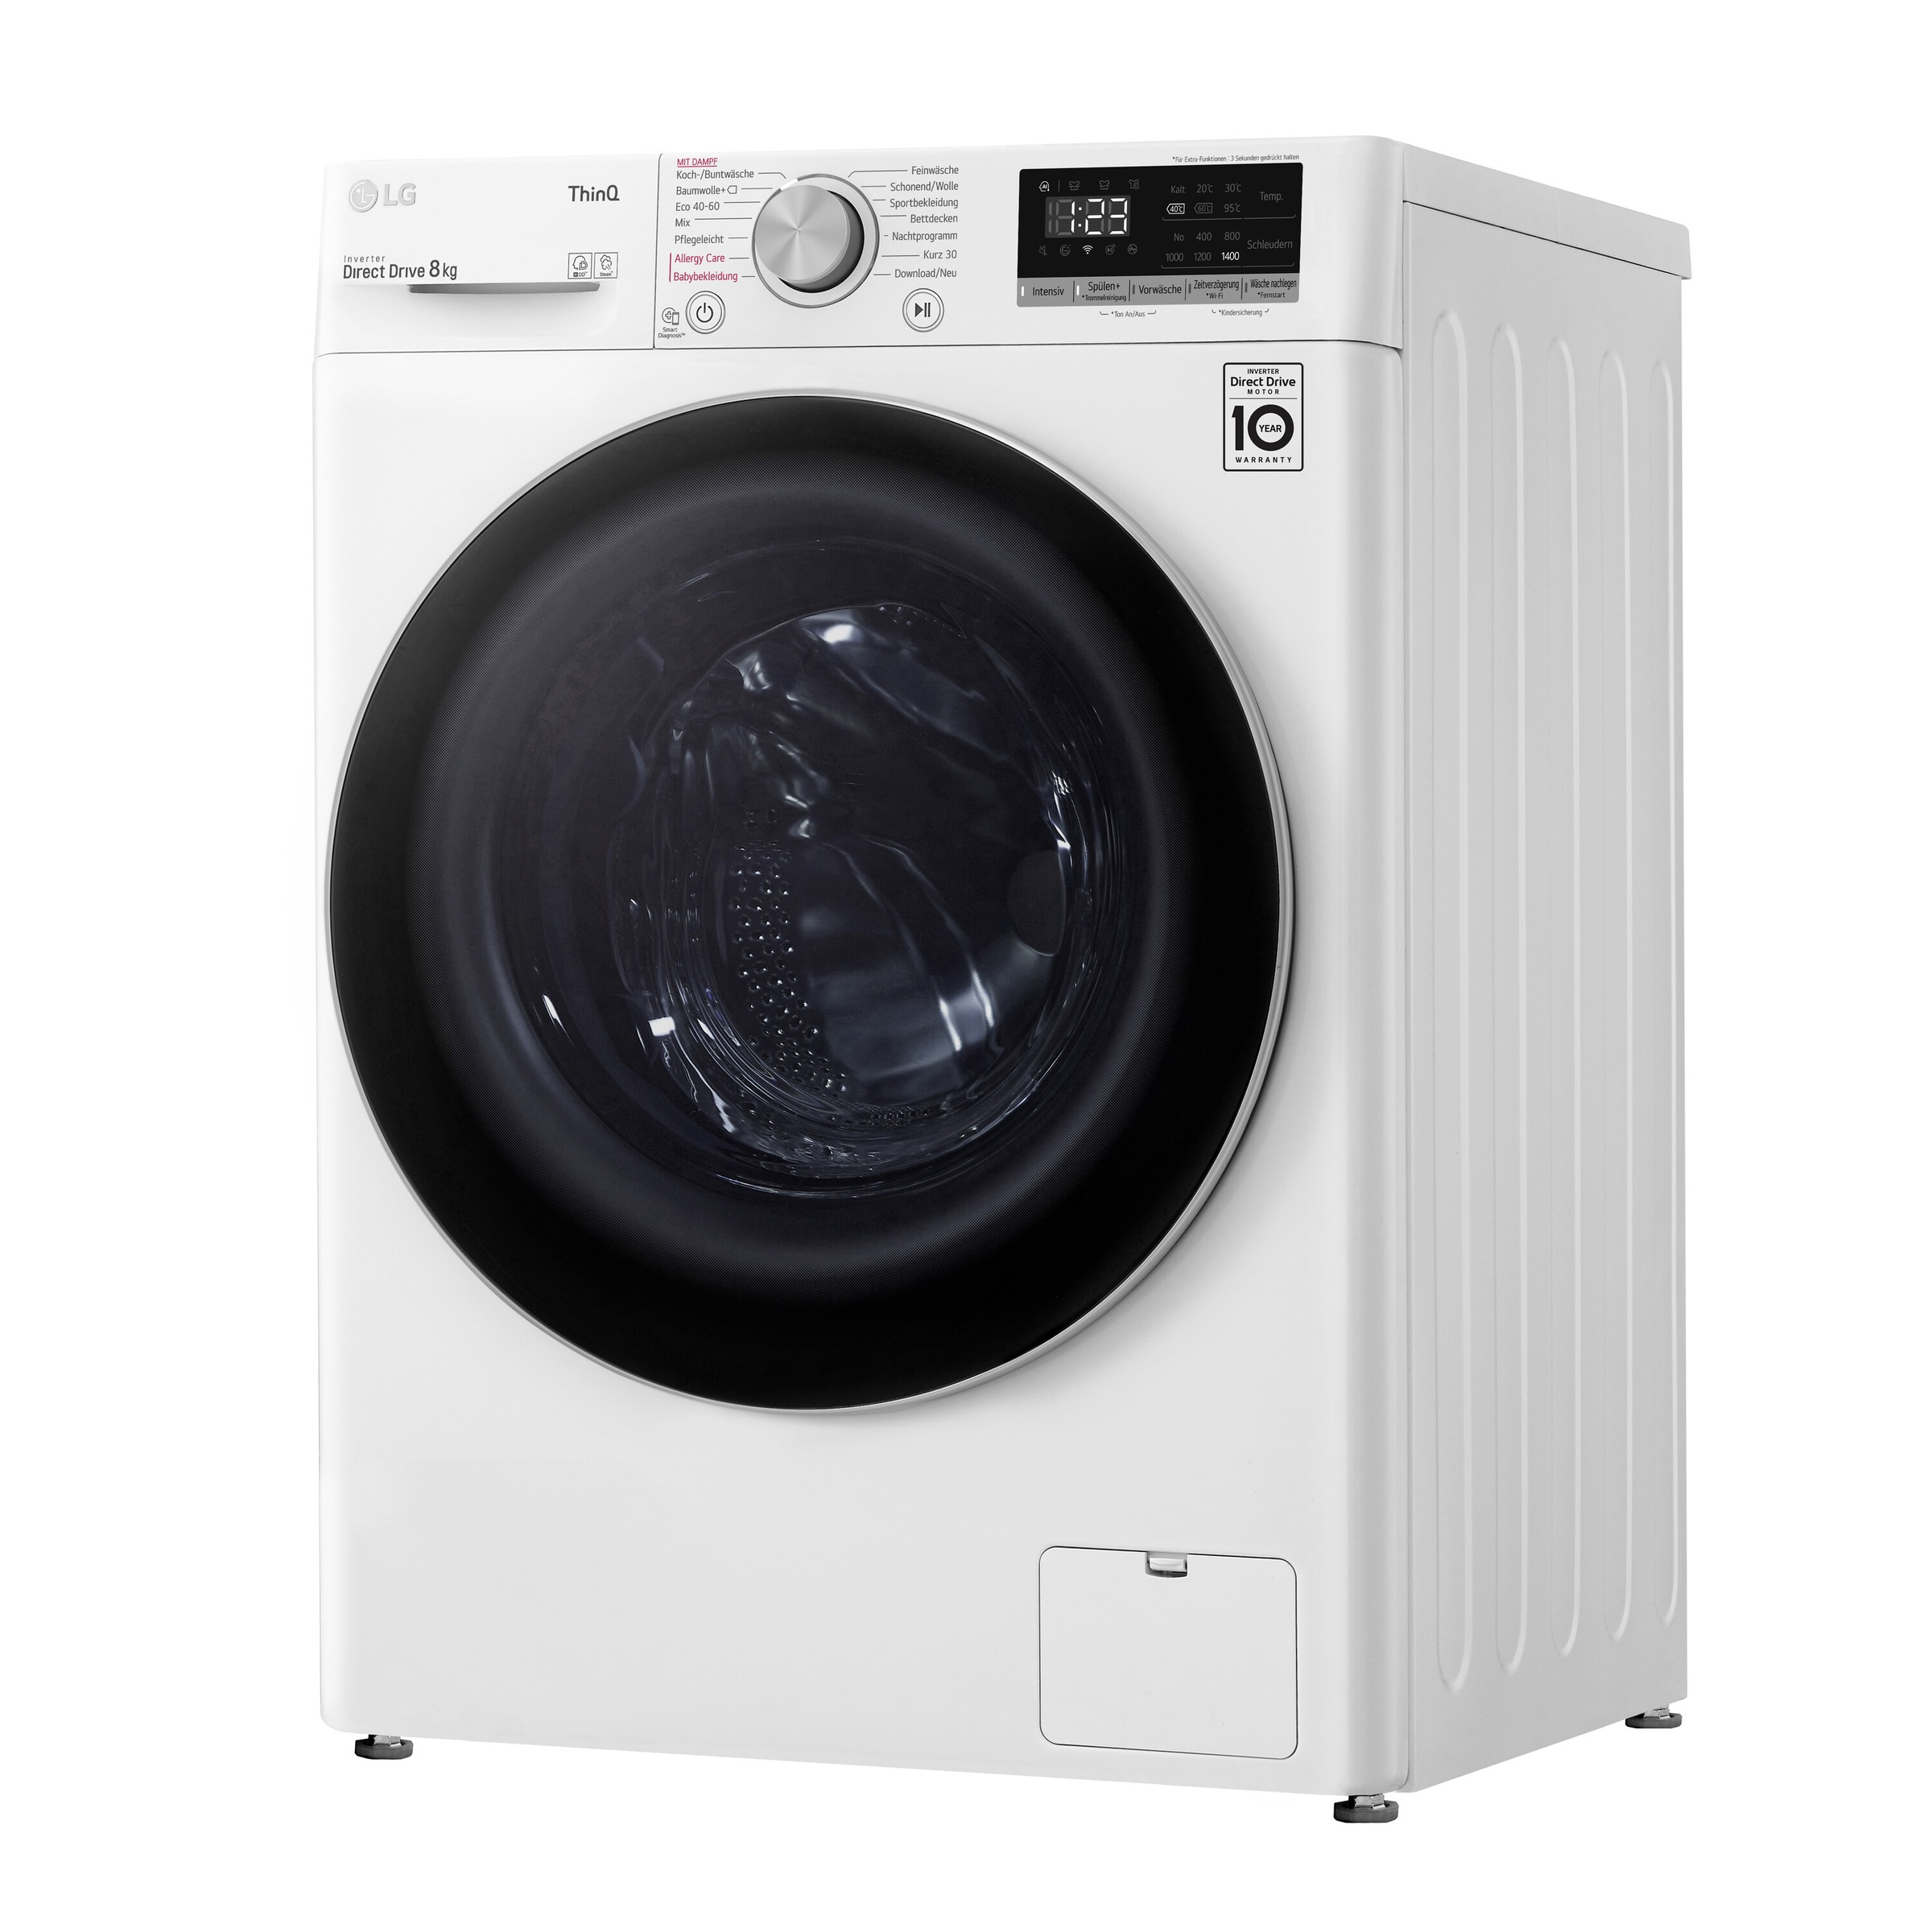 kg, OTTO LG 1400 W800, 8 V4 online U/min bei Waschmaschine,